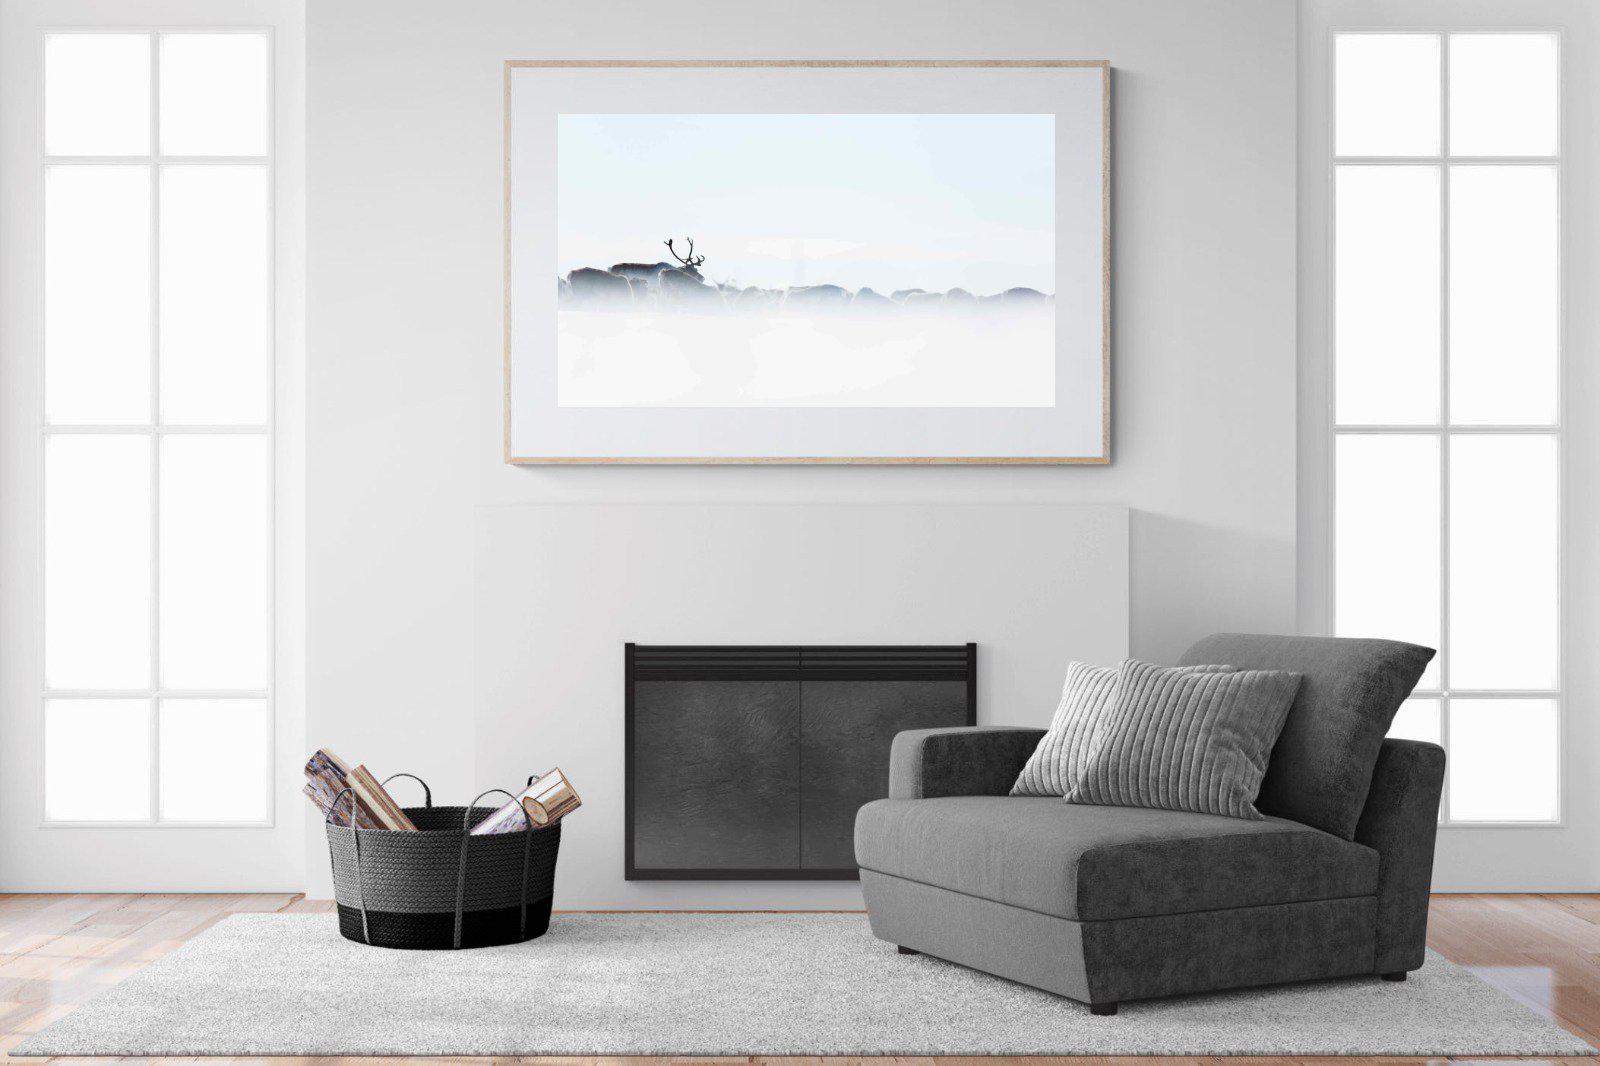 Reindeer-Wall_Art-150 x 100cm-Framed Print-Wood-Pixalot